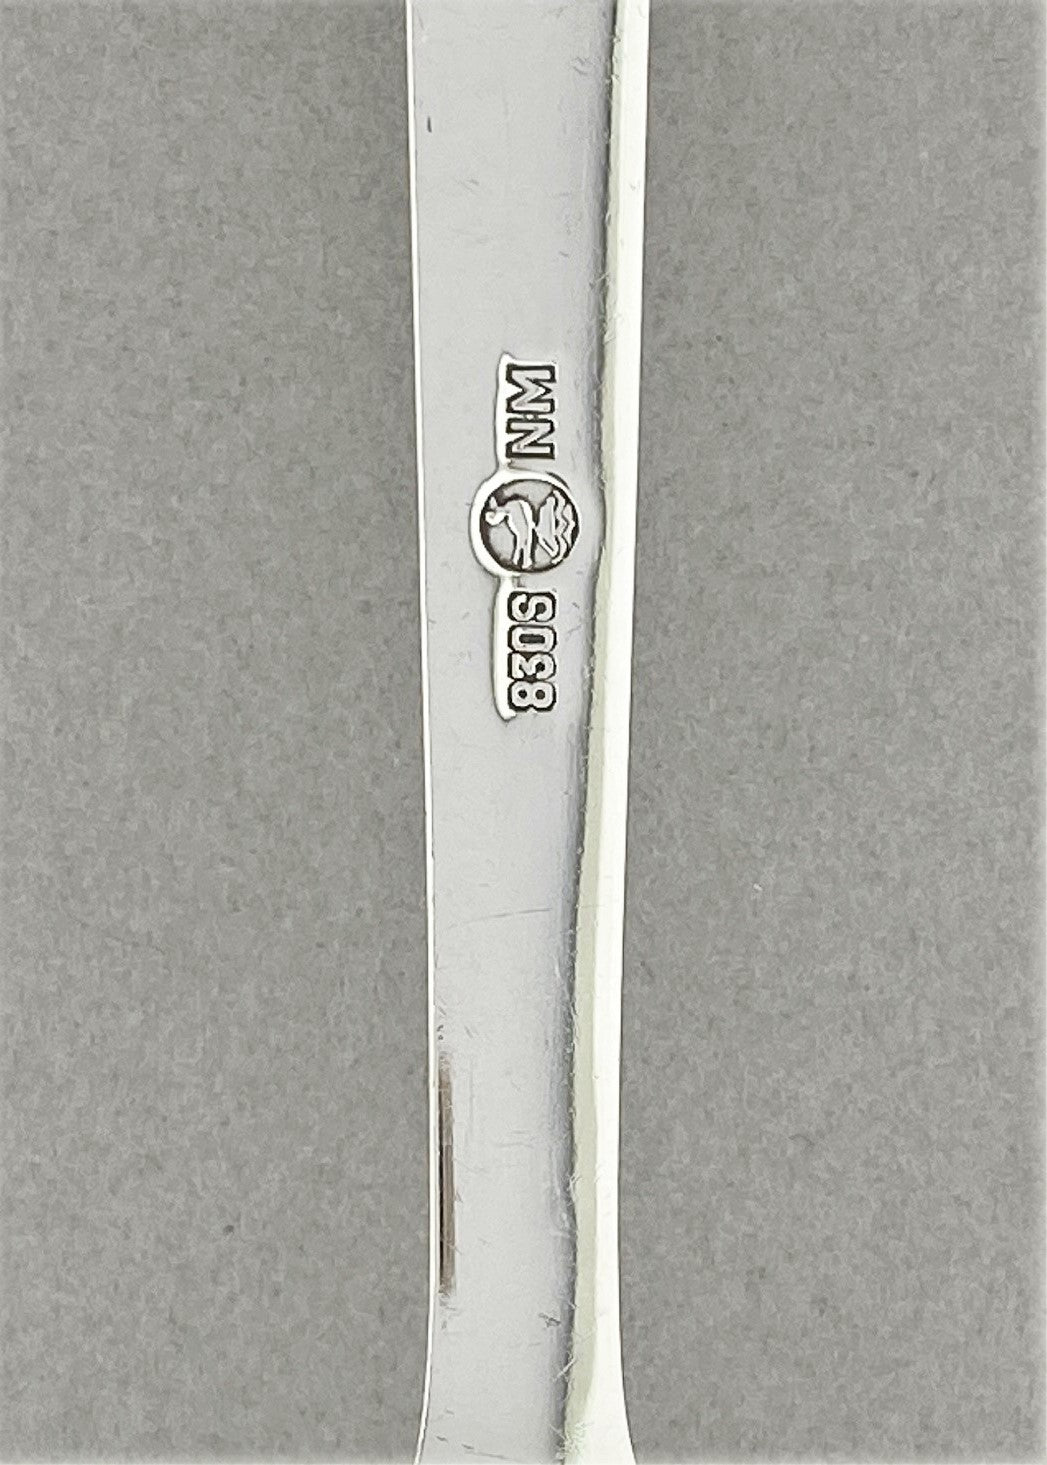 Vintage Telesilver serving fork